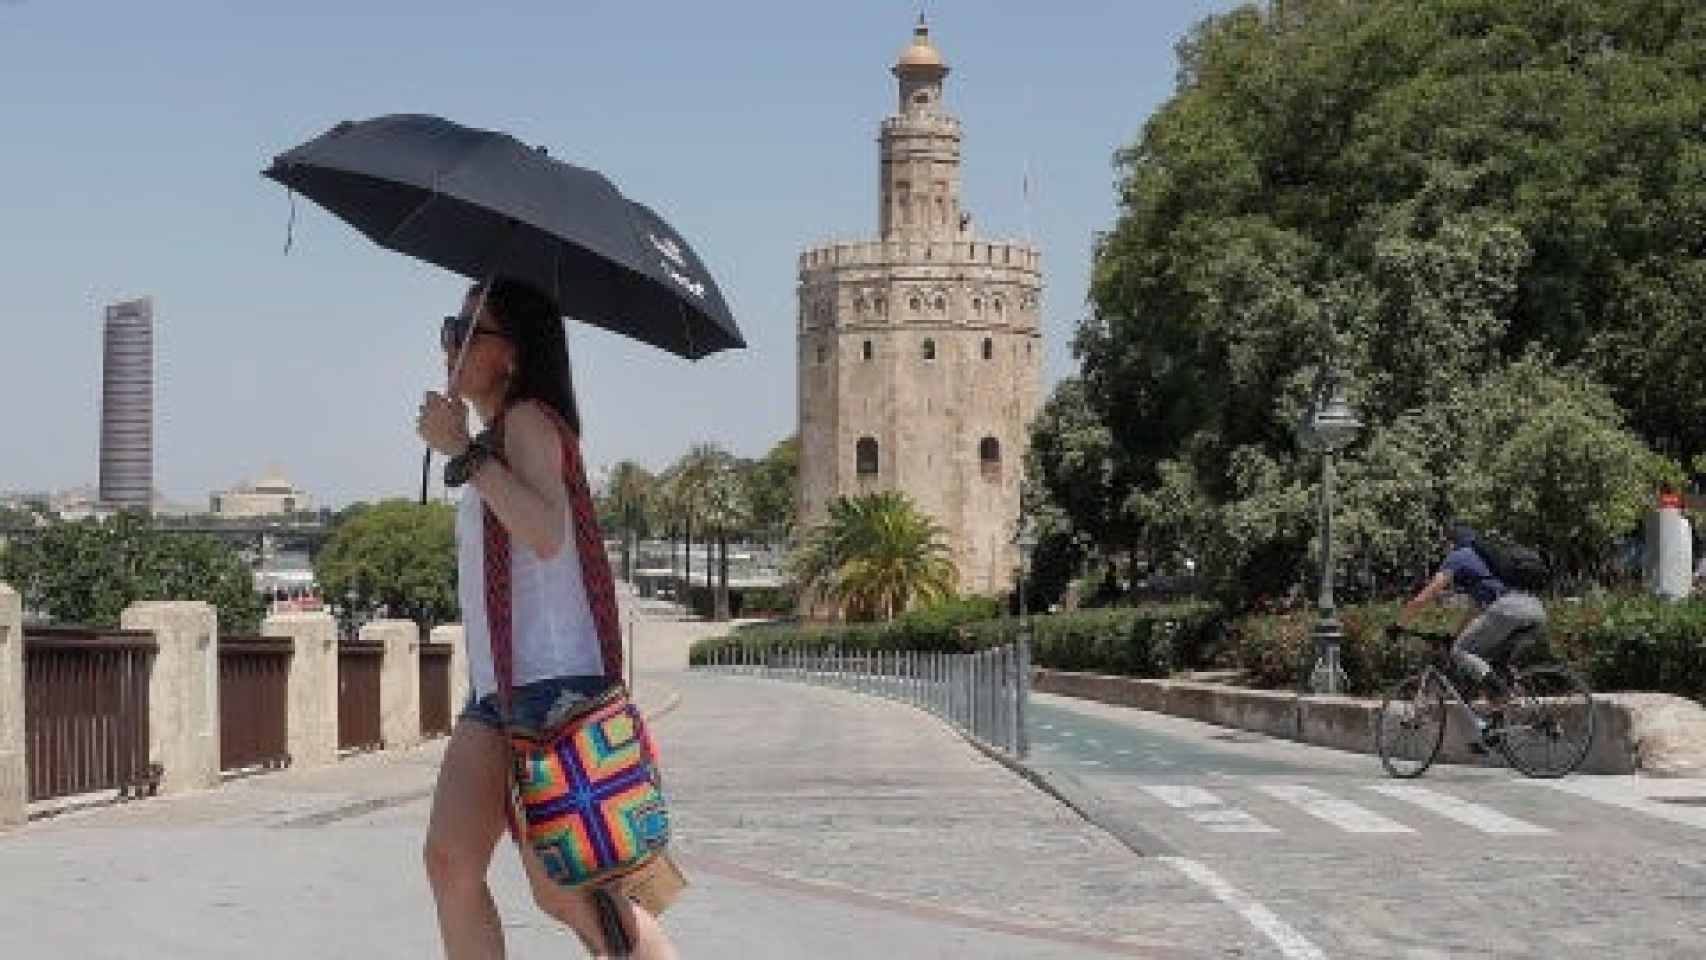 Una chica se refugia del calor bajo su paraguas en Sevilla.